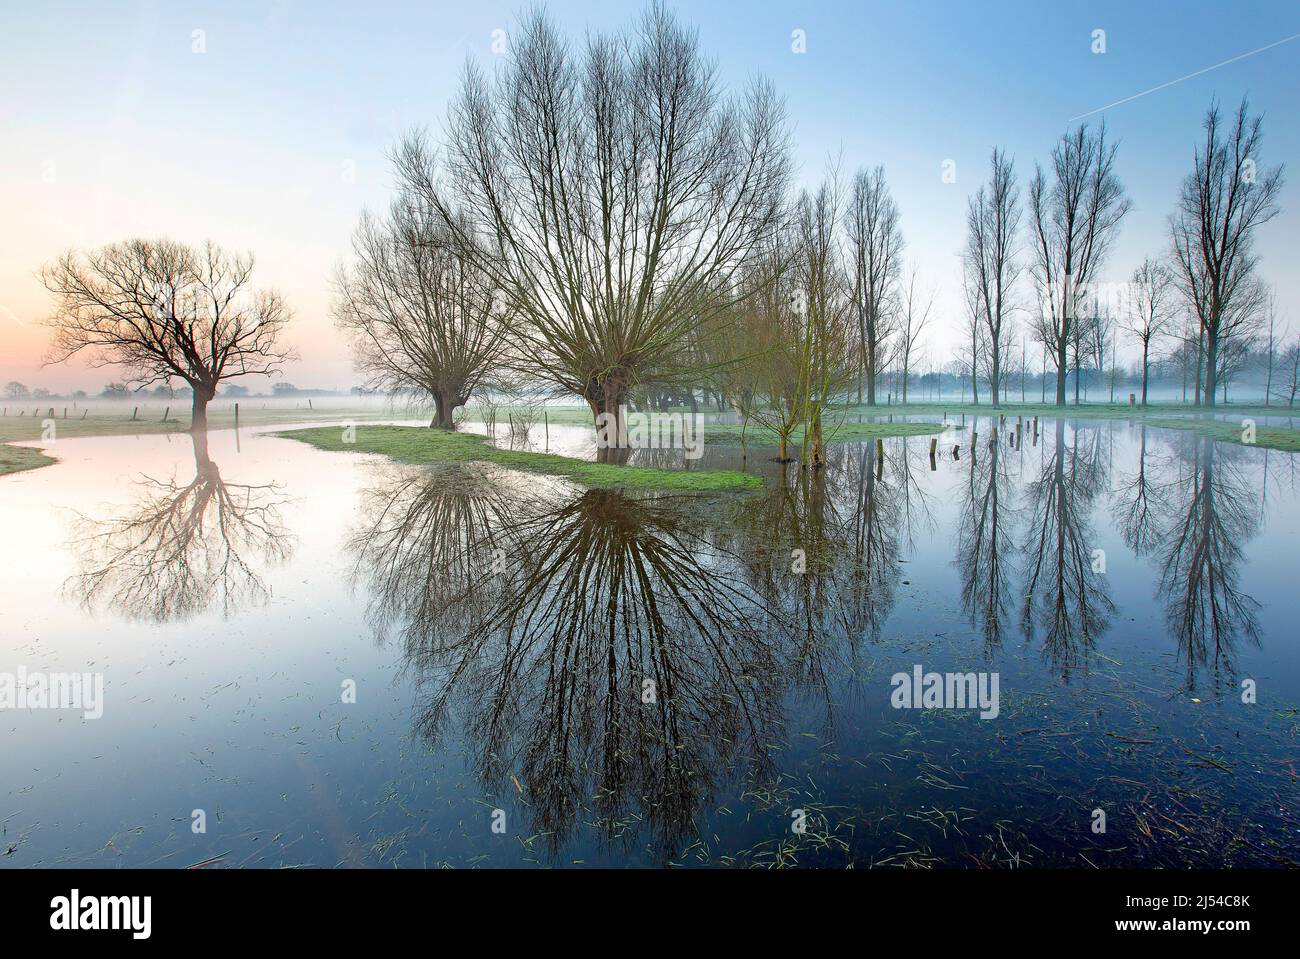 Pollard willow trees in flooded area, Belgium, West Flanders, Leiemeersen, Waregem Stock Photo